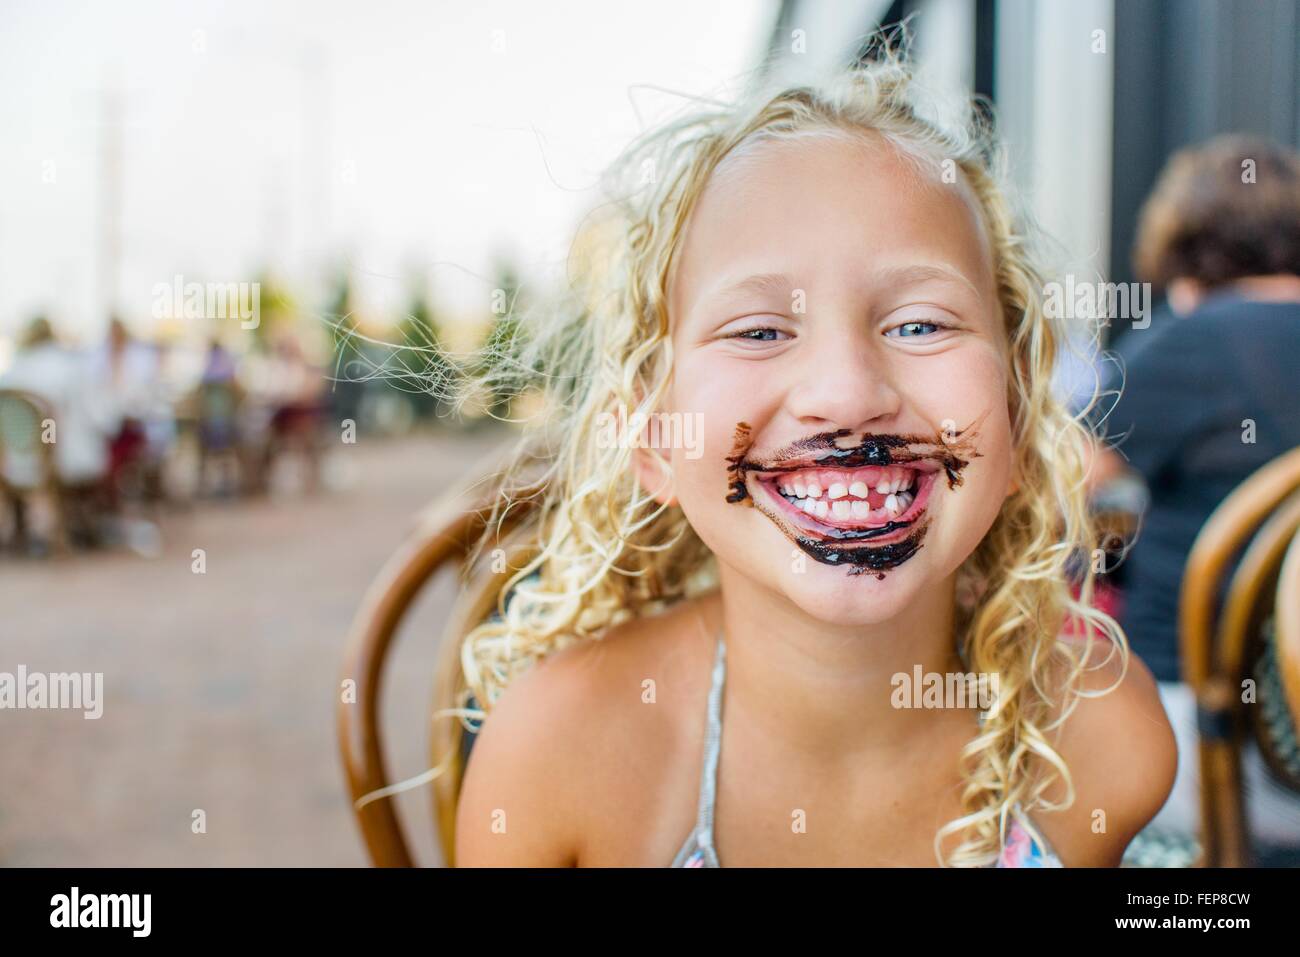 Porträt von blonden Haaren Mädchen am Straßencafé mit Sauce bedeckt Mund Stockfoto